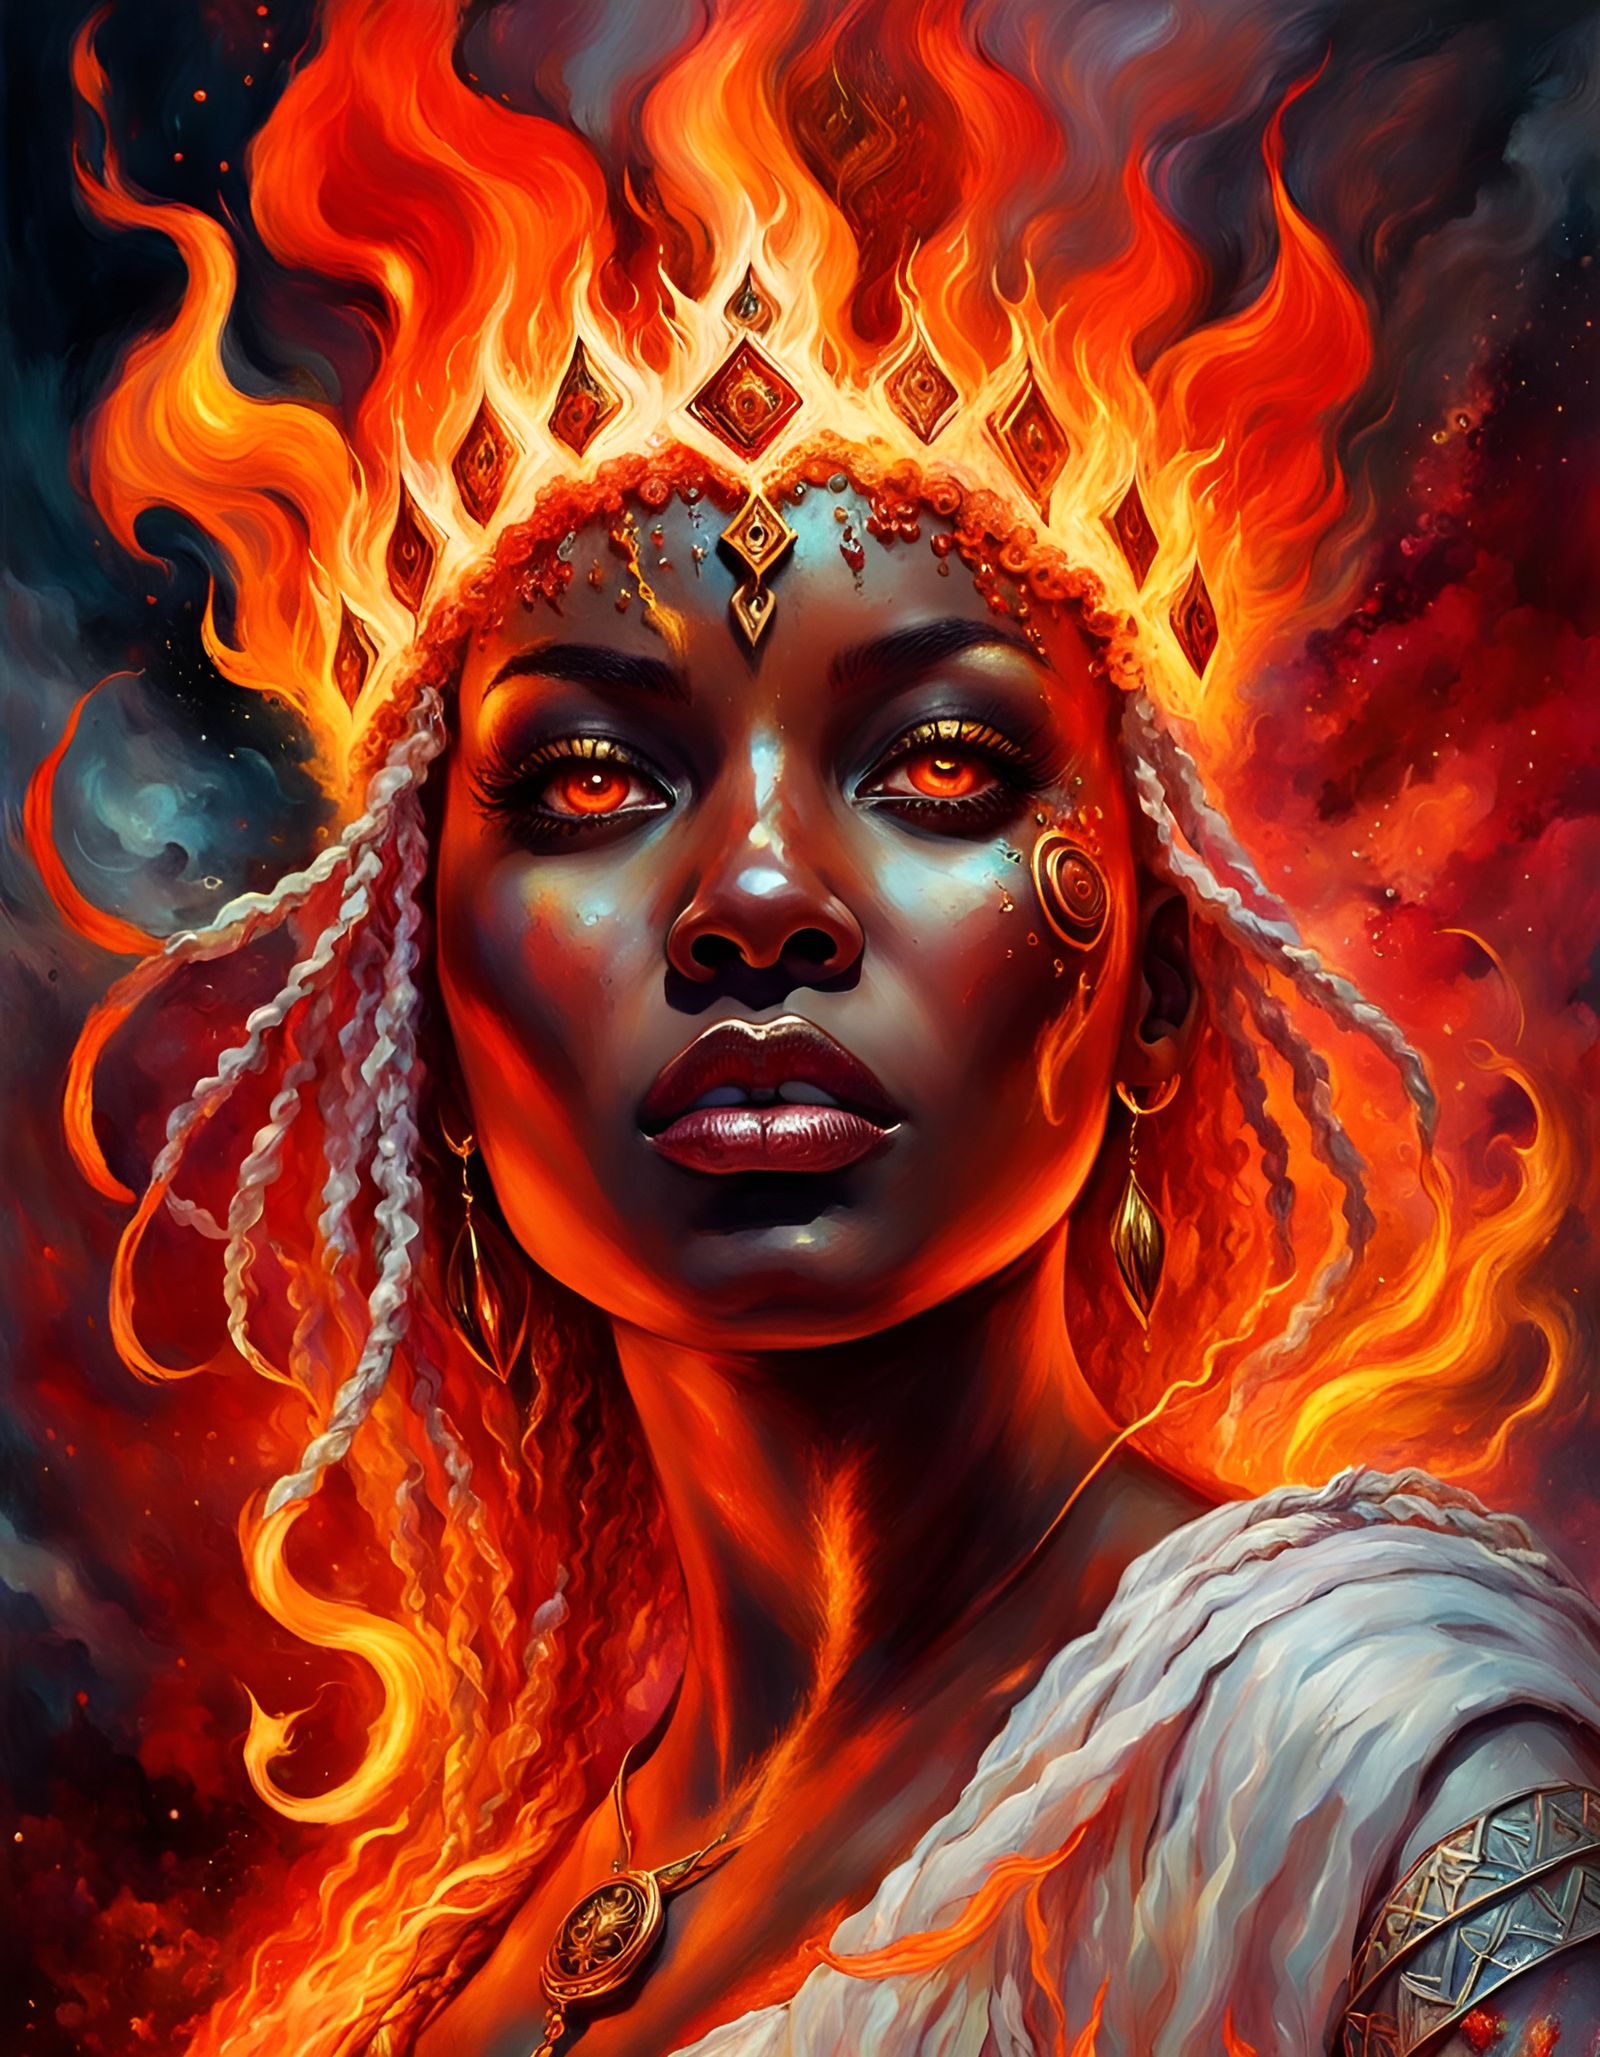 Goddess of Fire